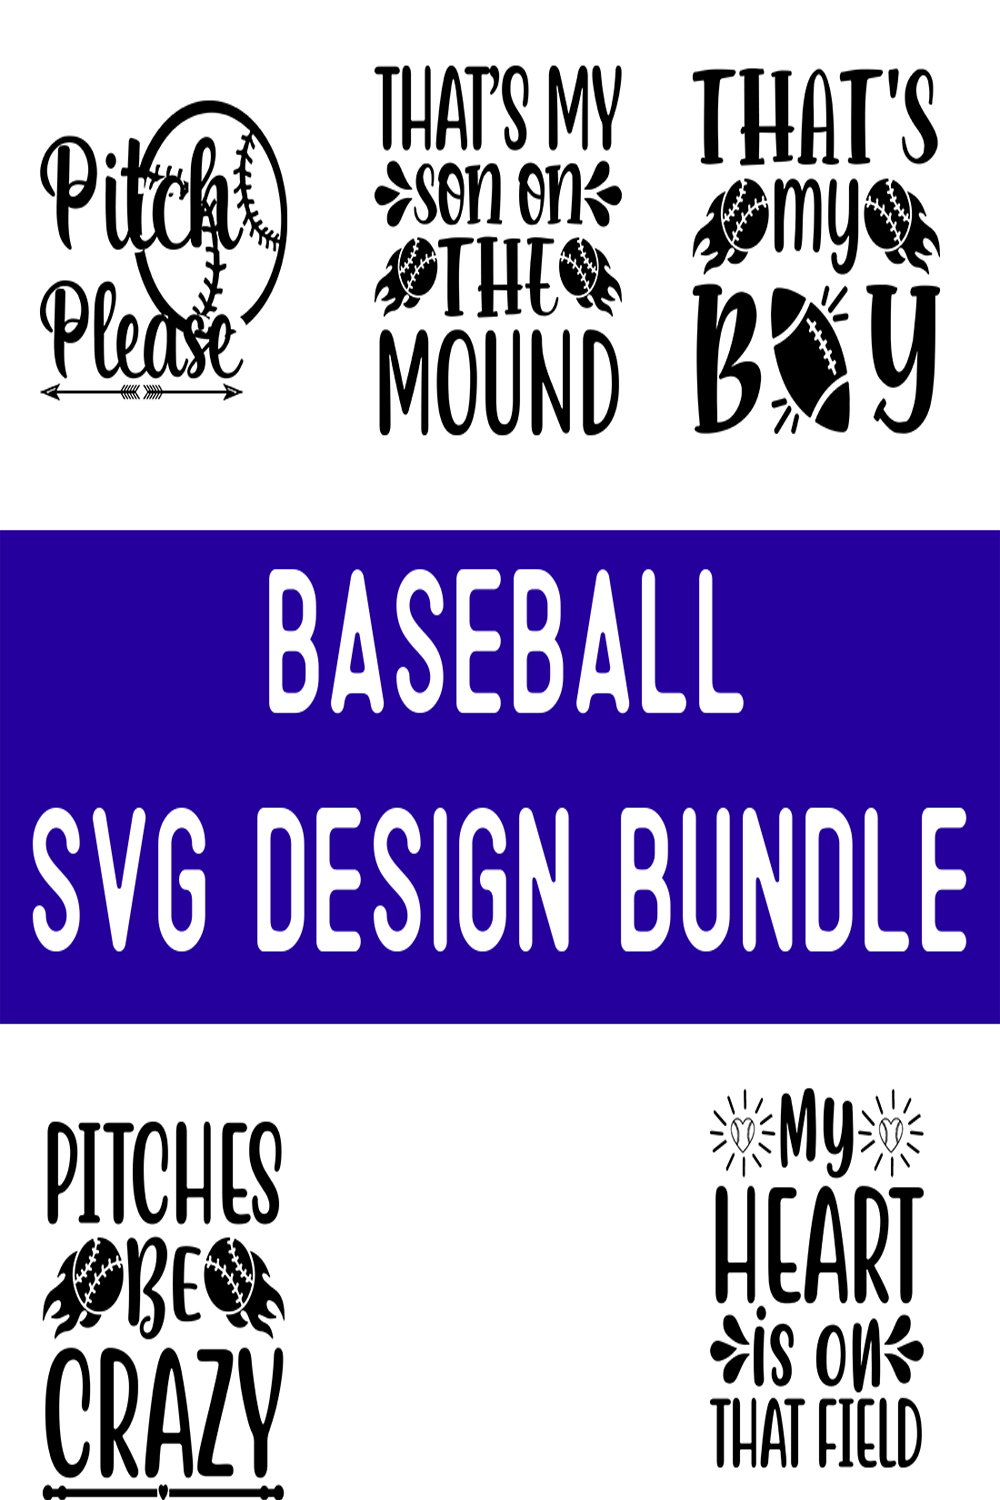 Baseball SVG Design Bundle pinterest preview image.